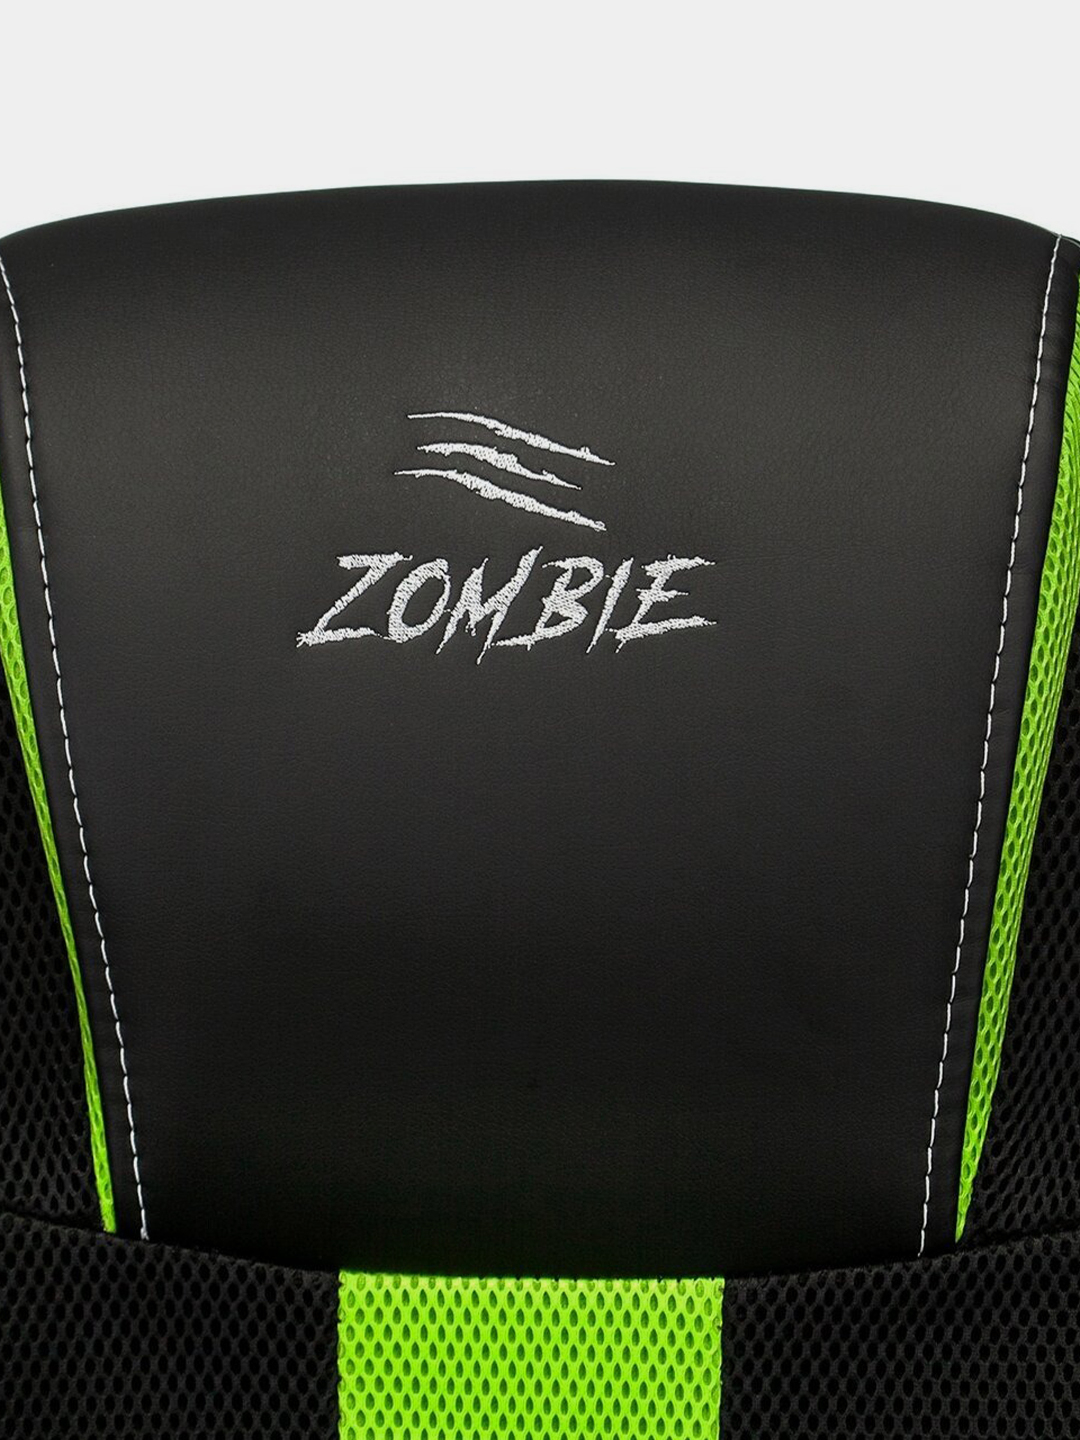 кресло zombie 9 black